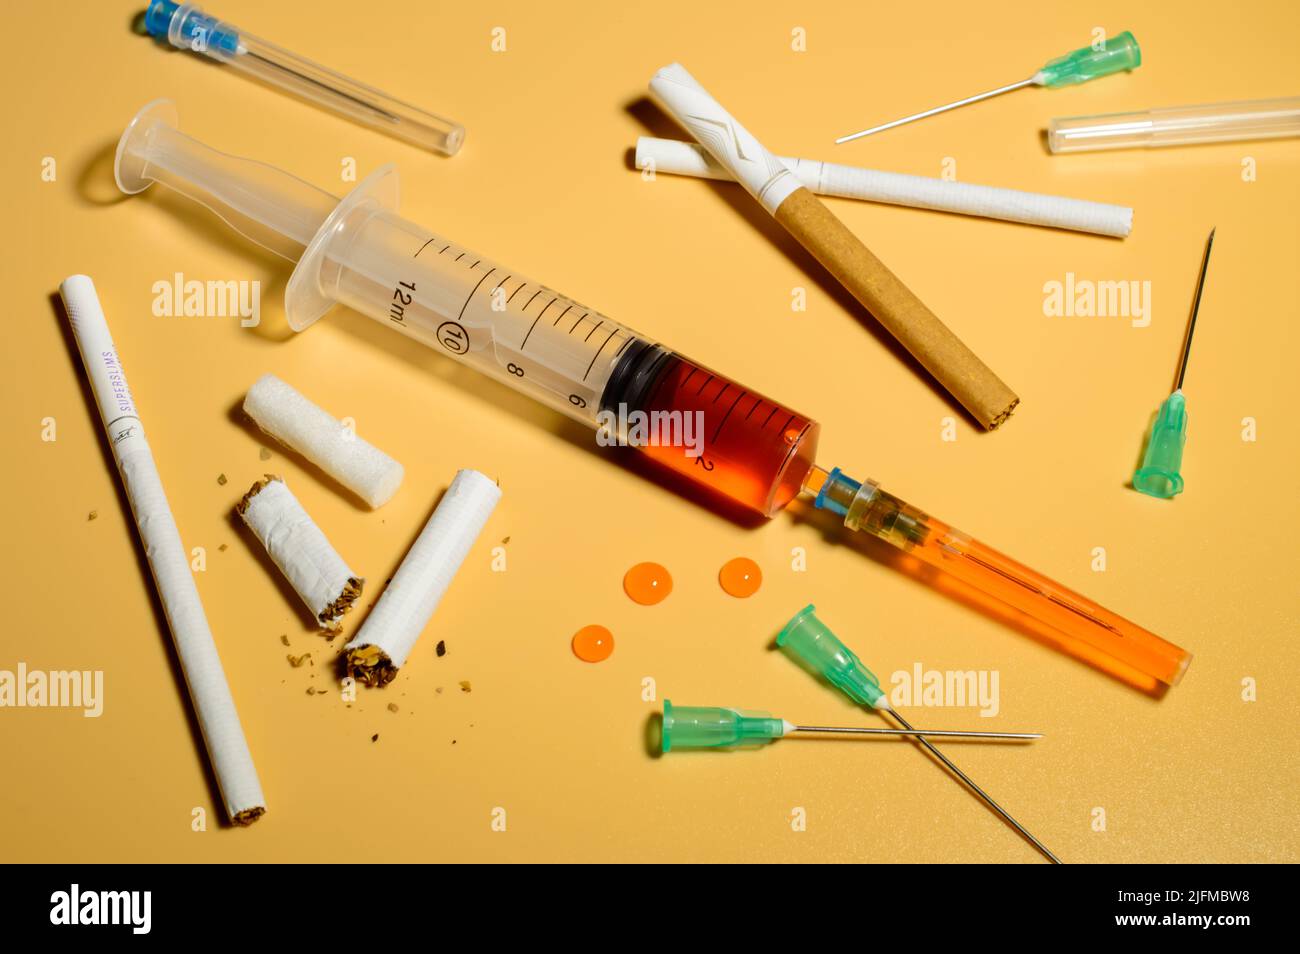 Soziale Probleme - Zusammenstellung von Zigaretten und Spritzennadeln. Spritze mit dem Medikament in der Mitte. Orangefarbener Hintergrund. Stockfoto